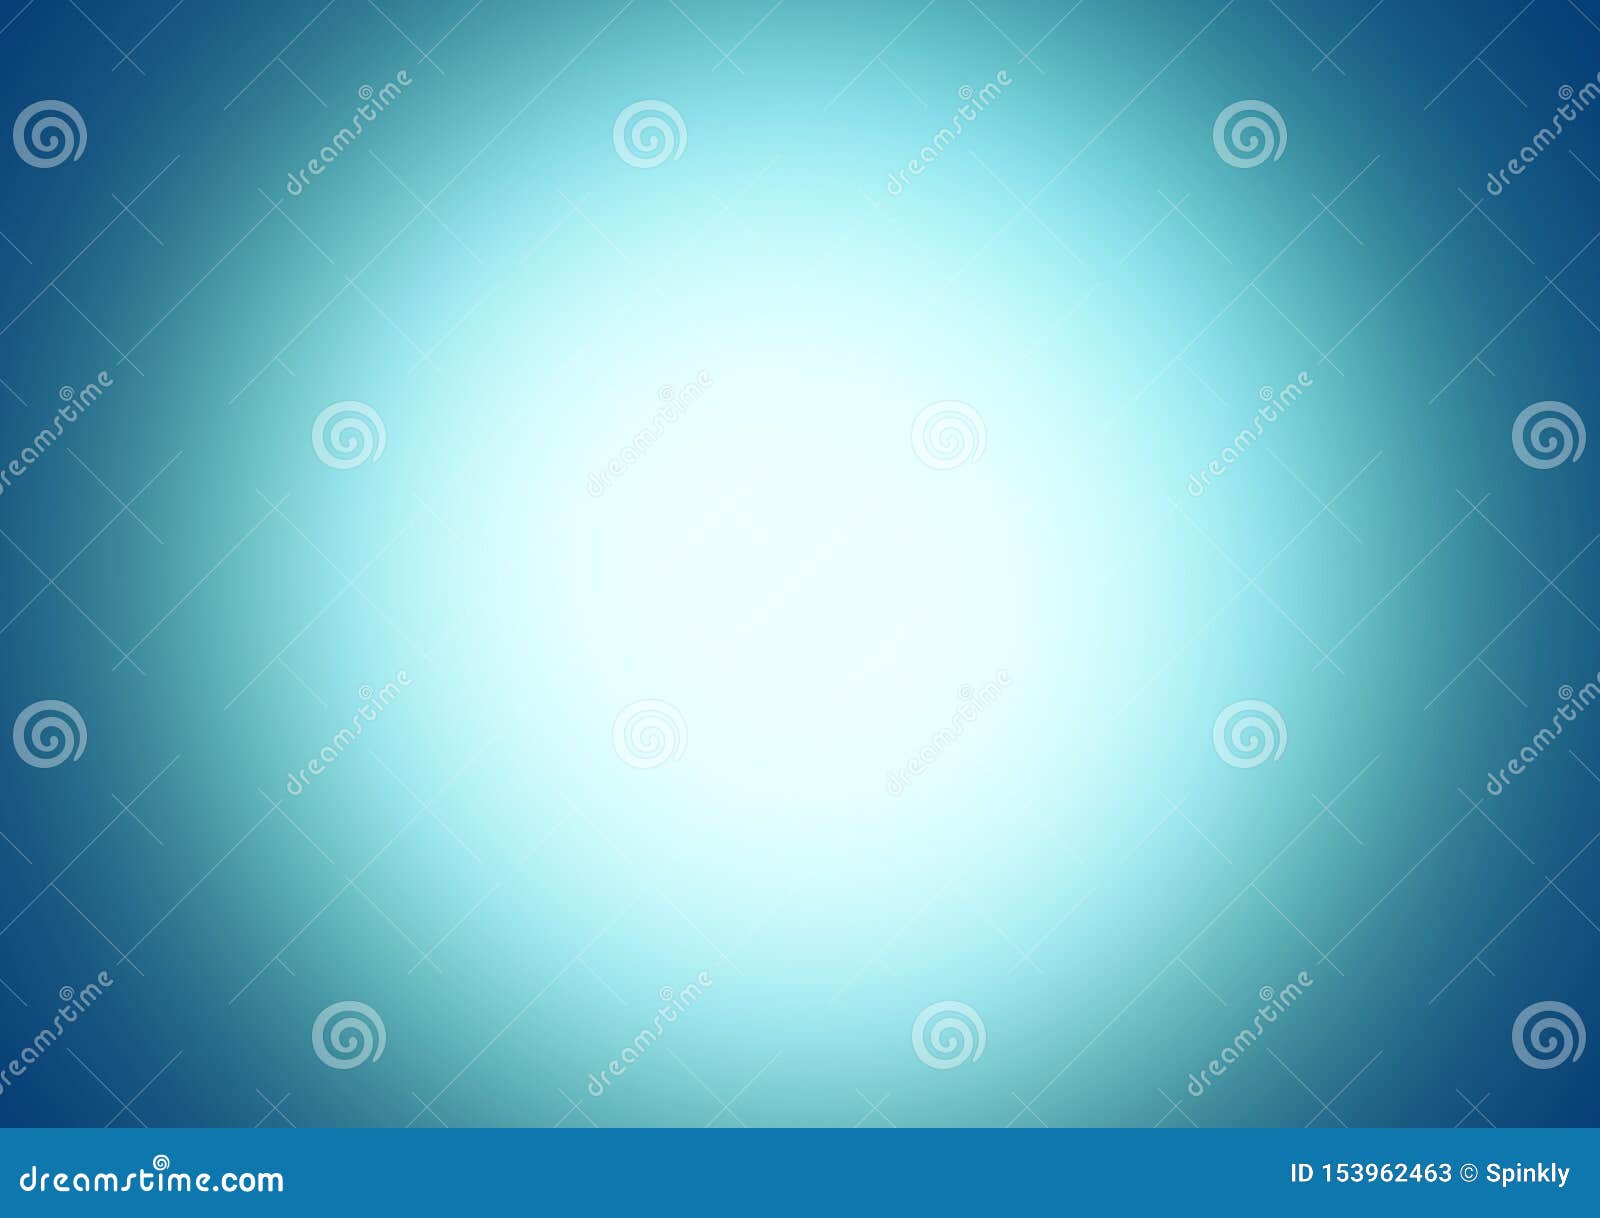 blue plain simple gradient background